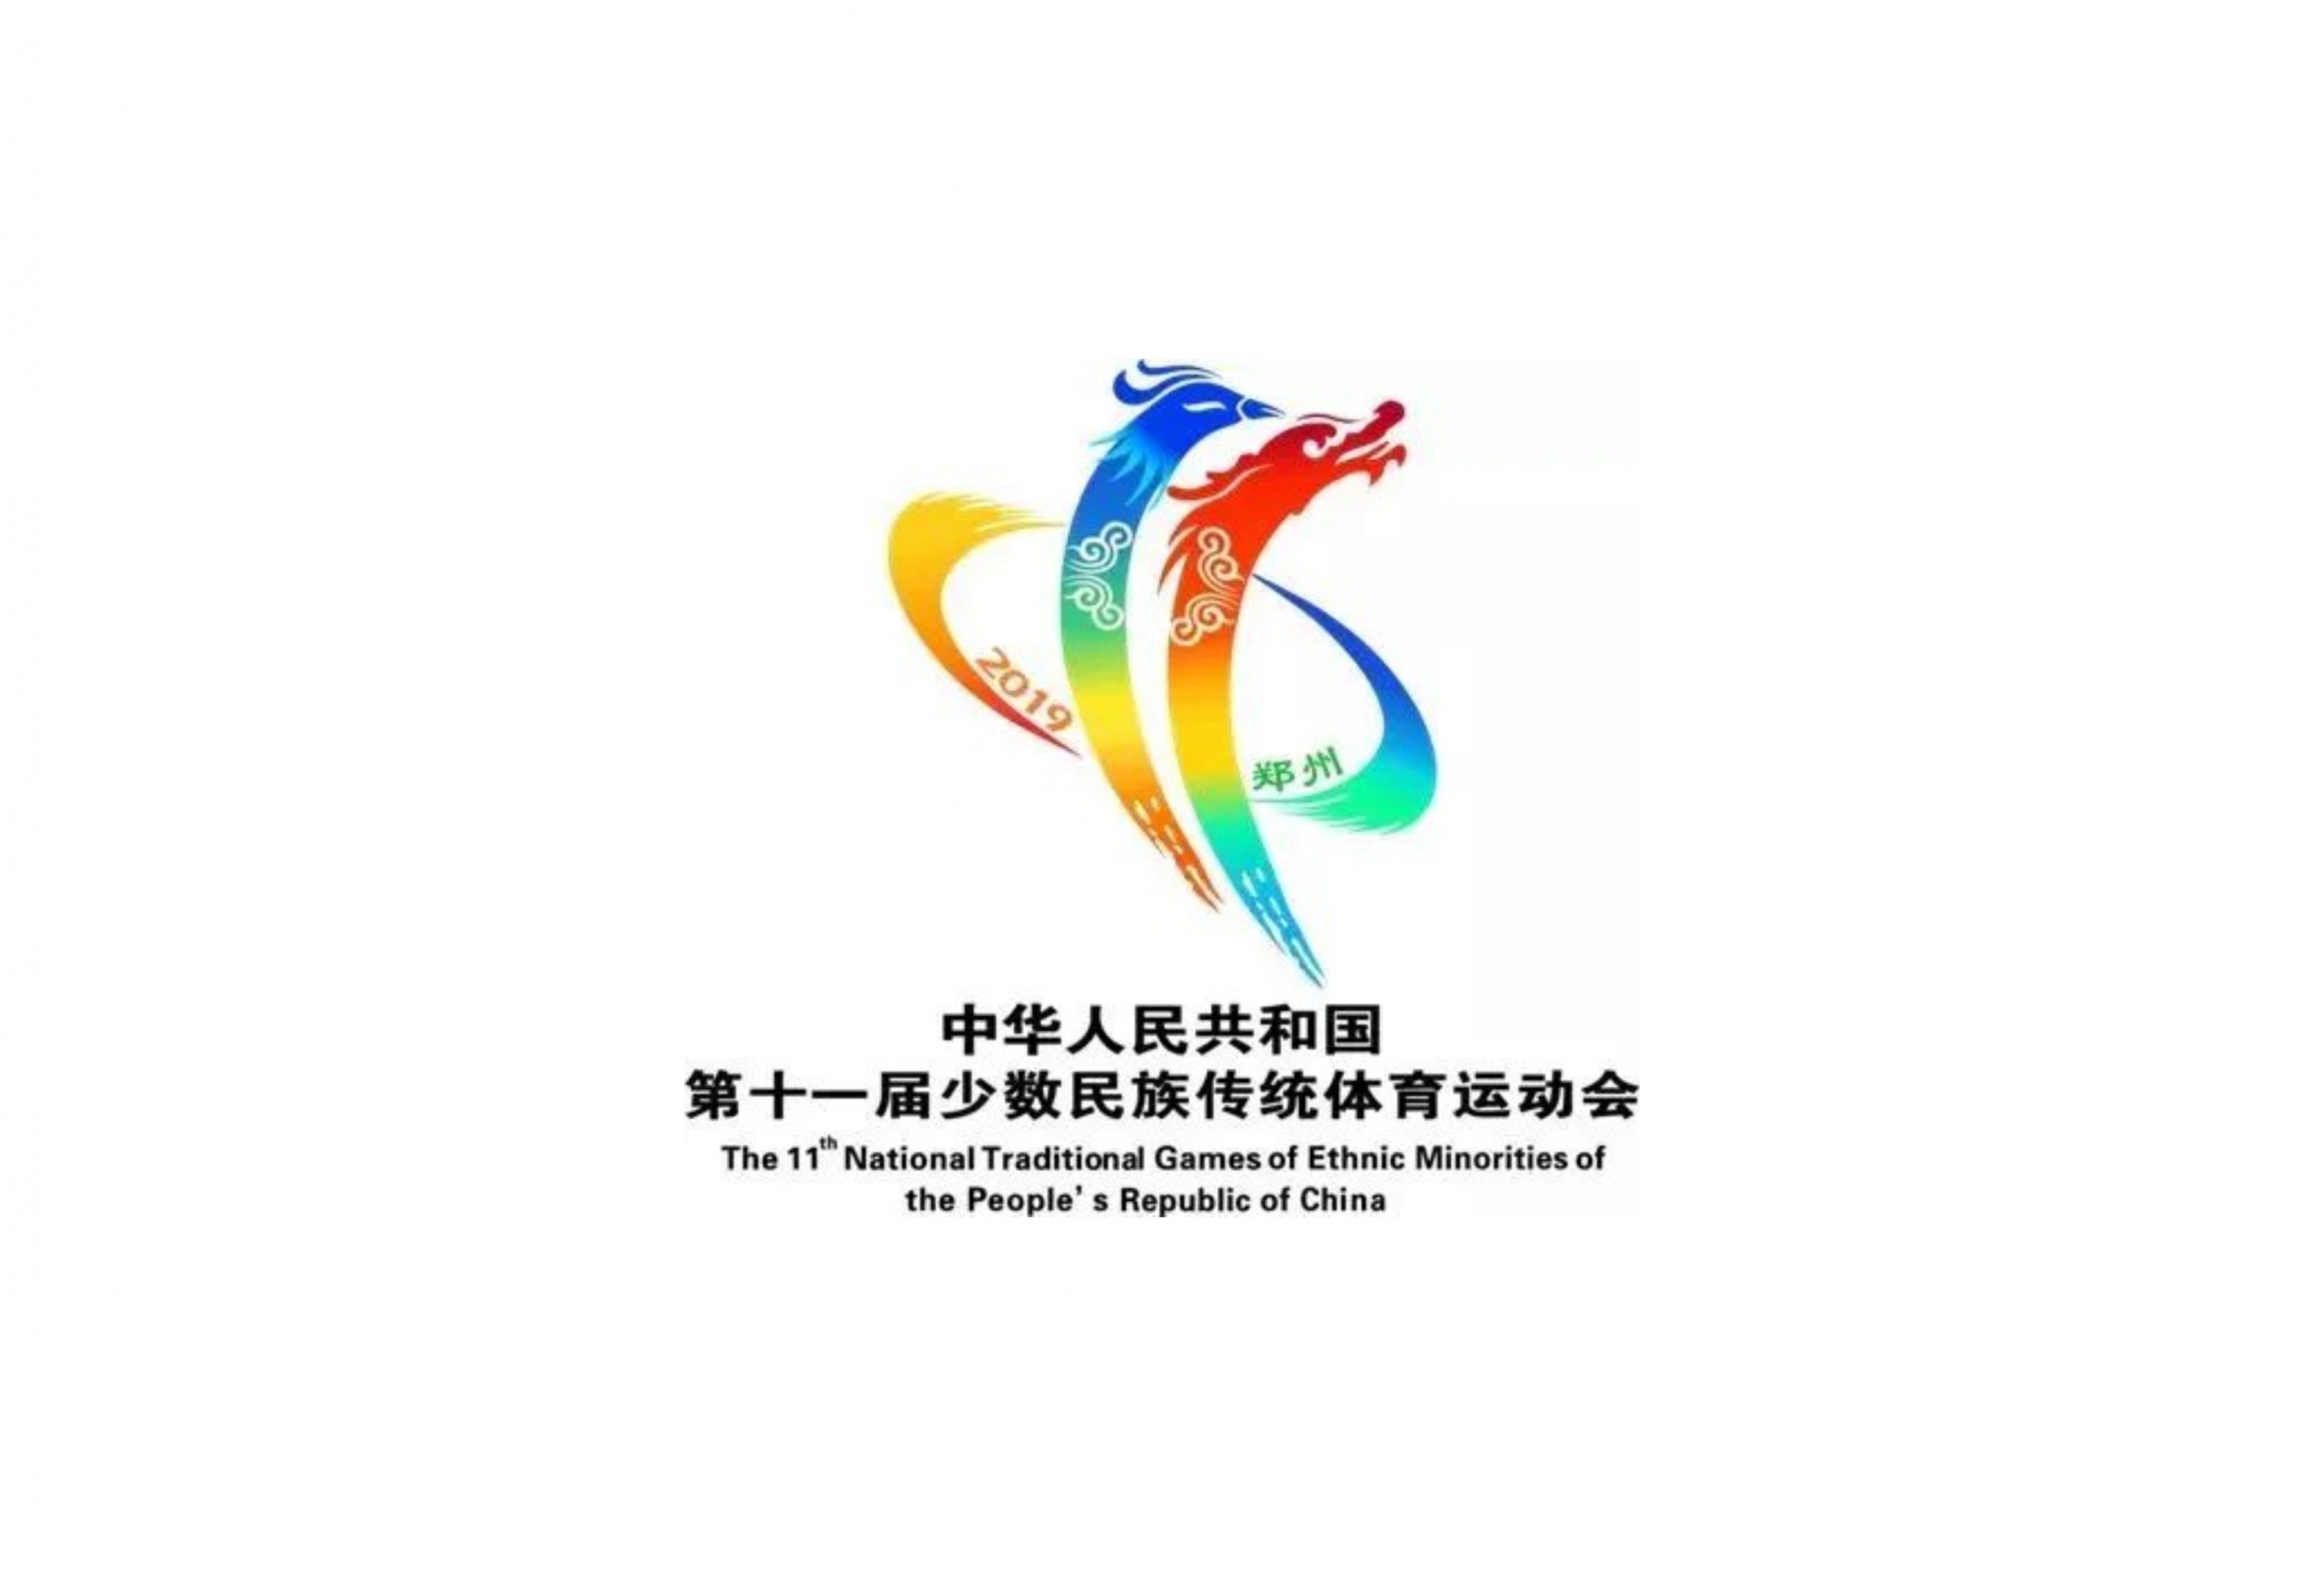 郑州少数民族运动会logo设计别出心裁 运动风采一睹为